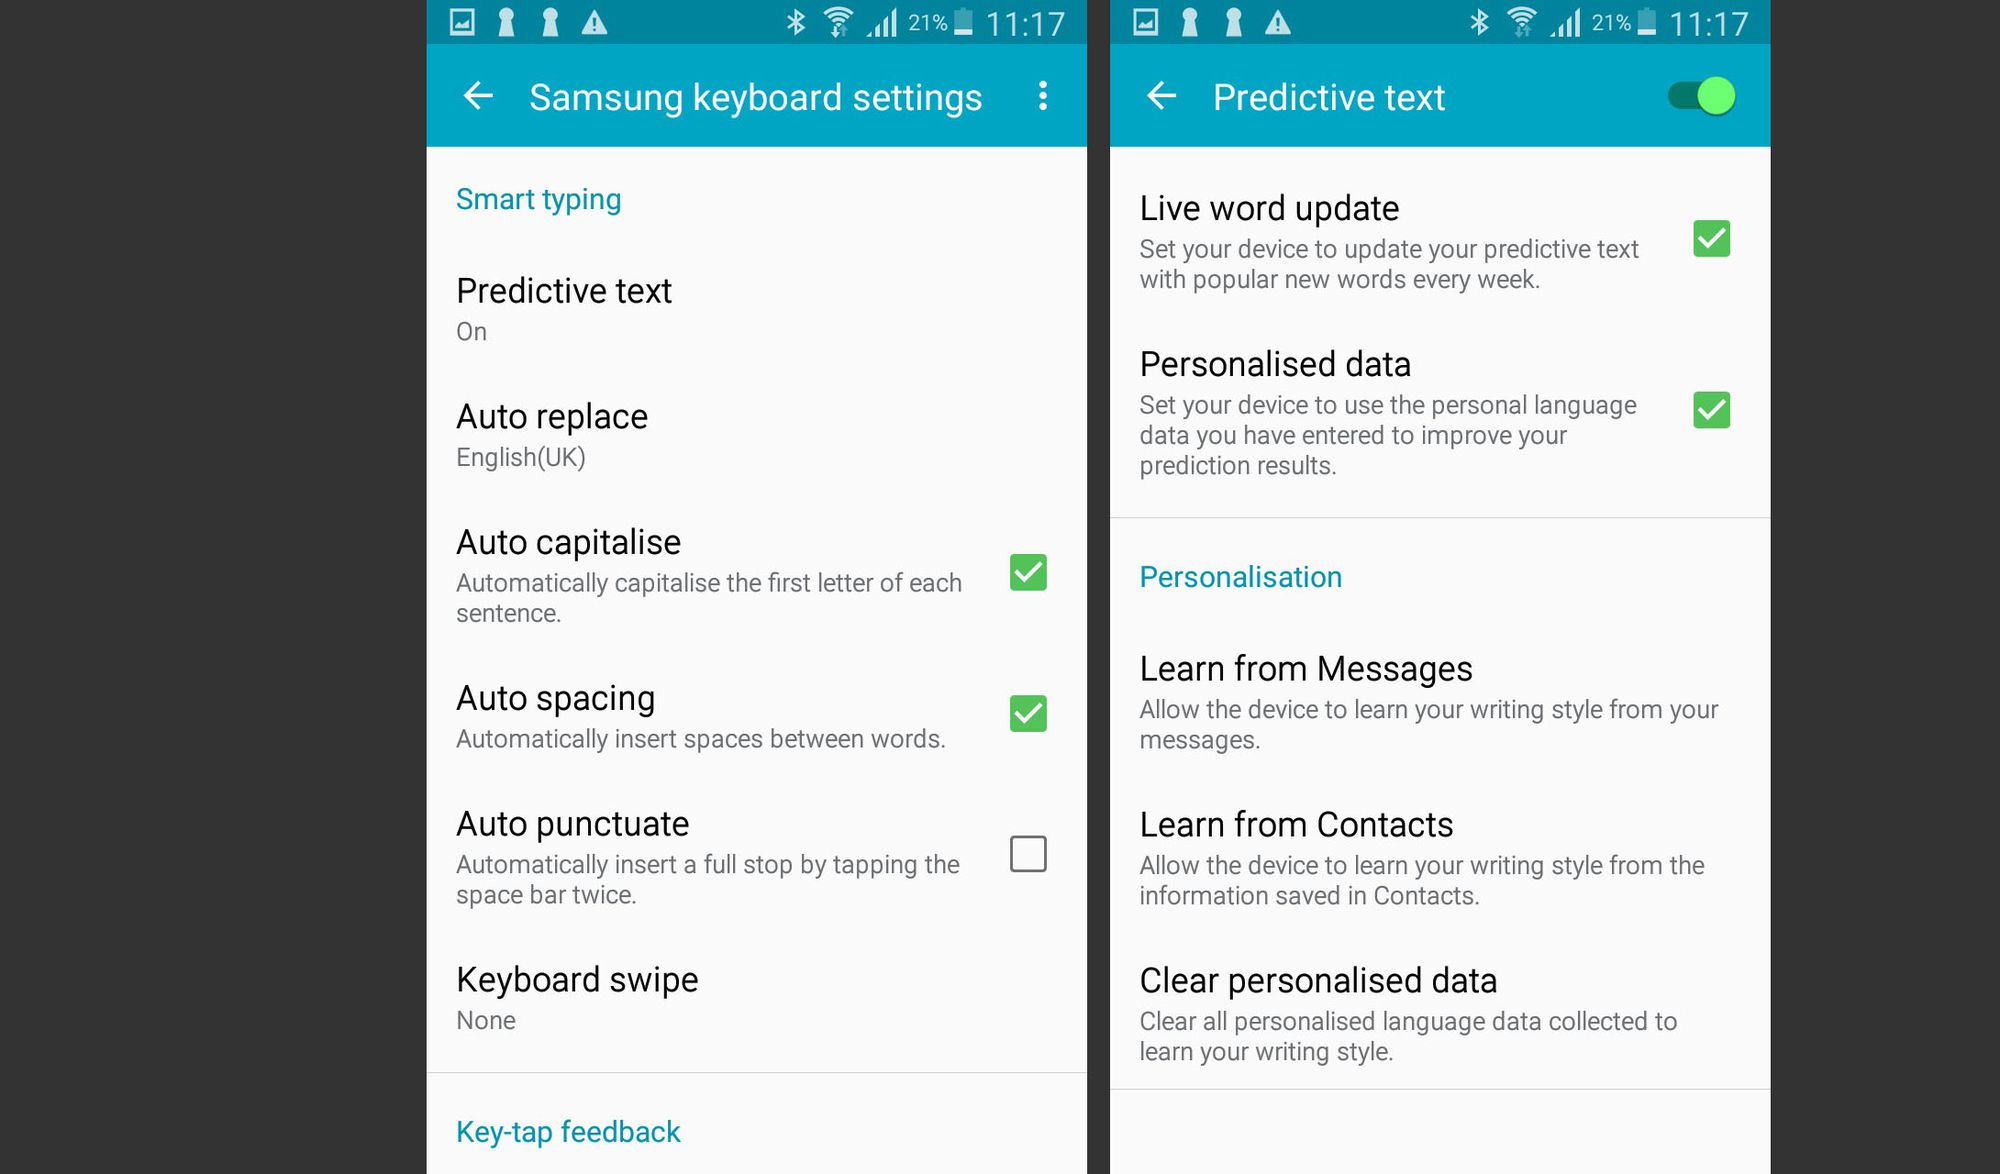 Samsungin näppäimistöasetukset ja ennakoivan tekstin asetukset